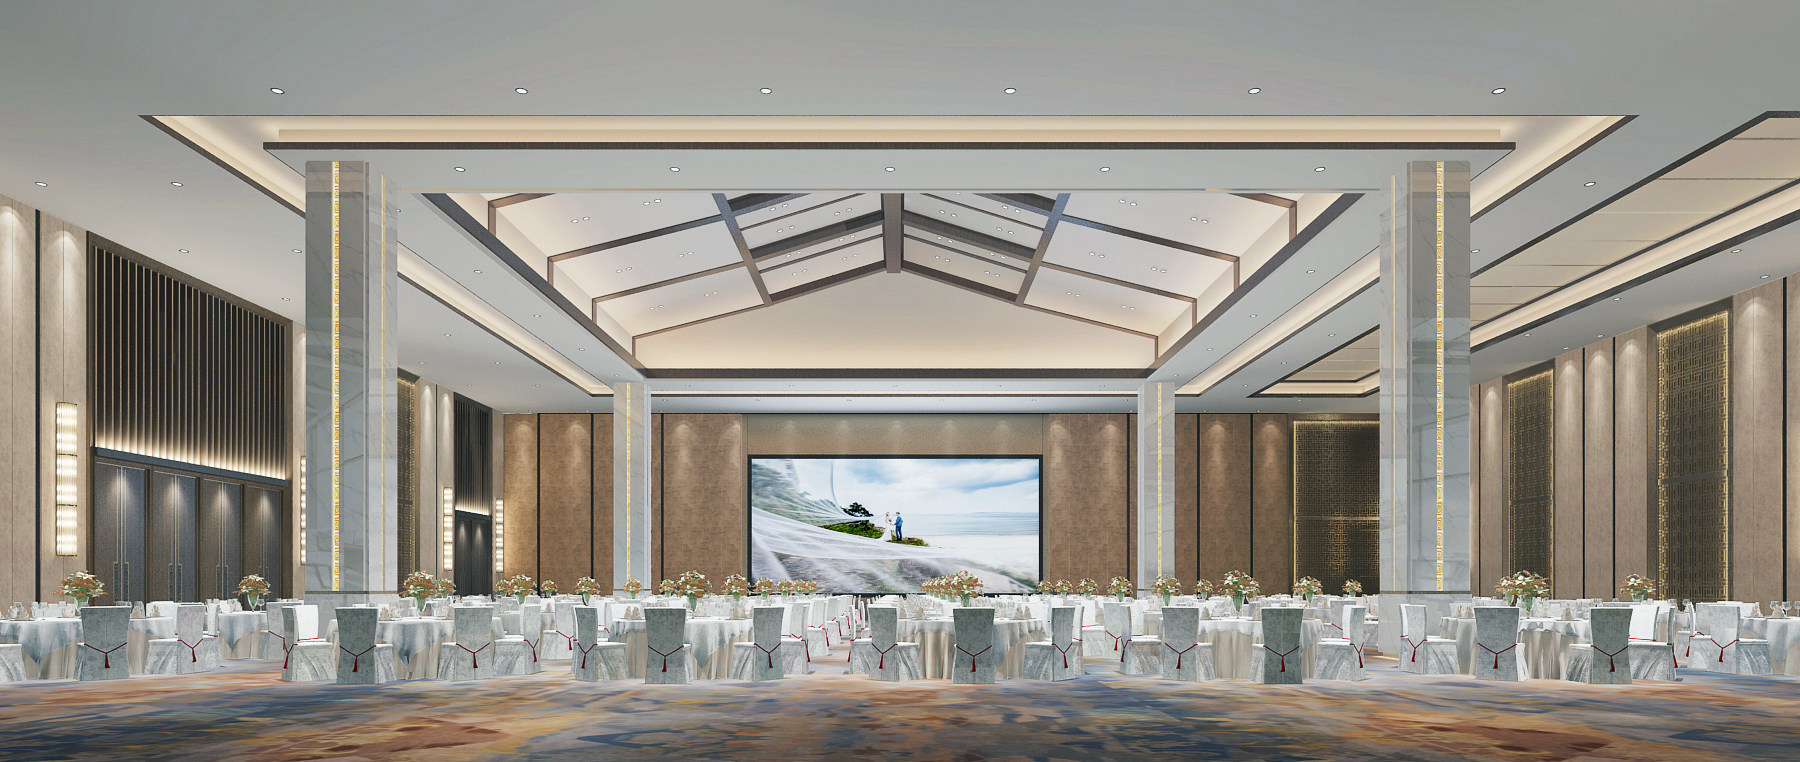 新中式酒店宴会厅3d模型下载